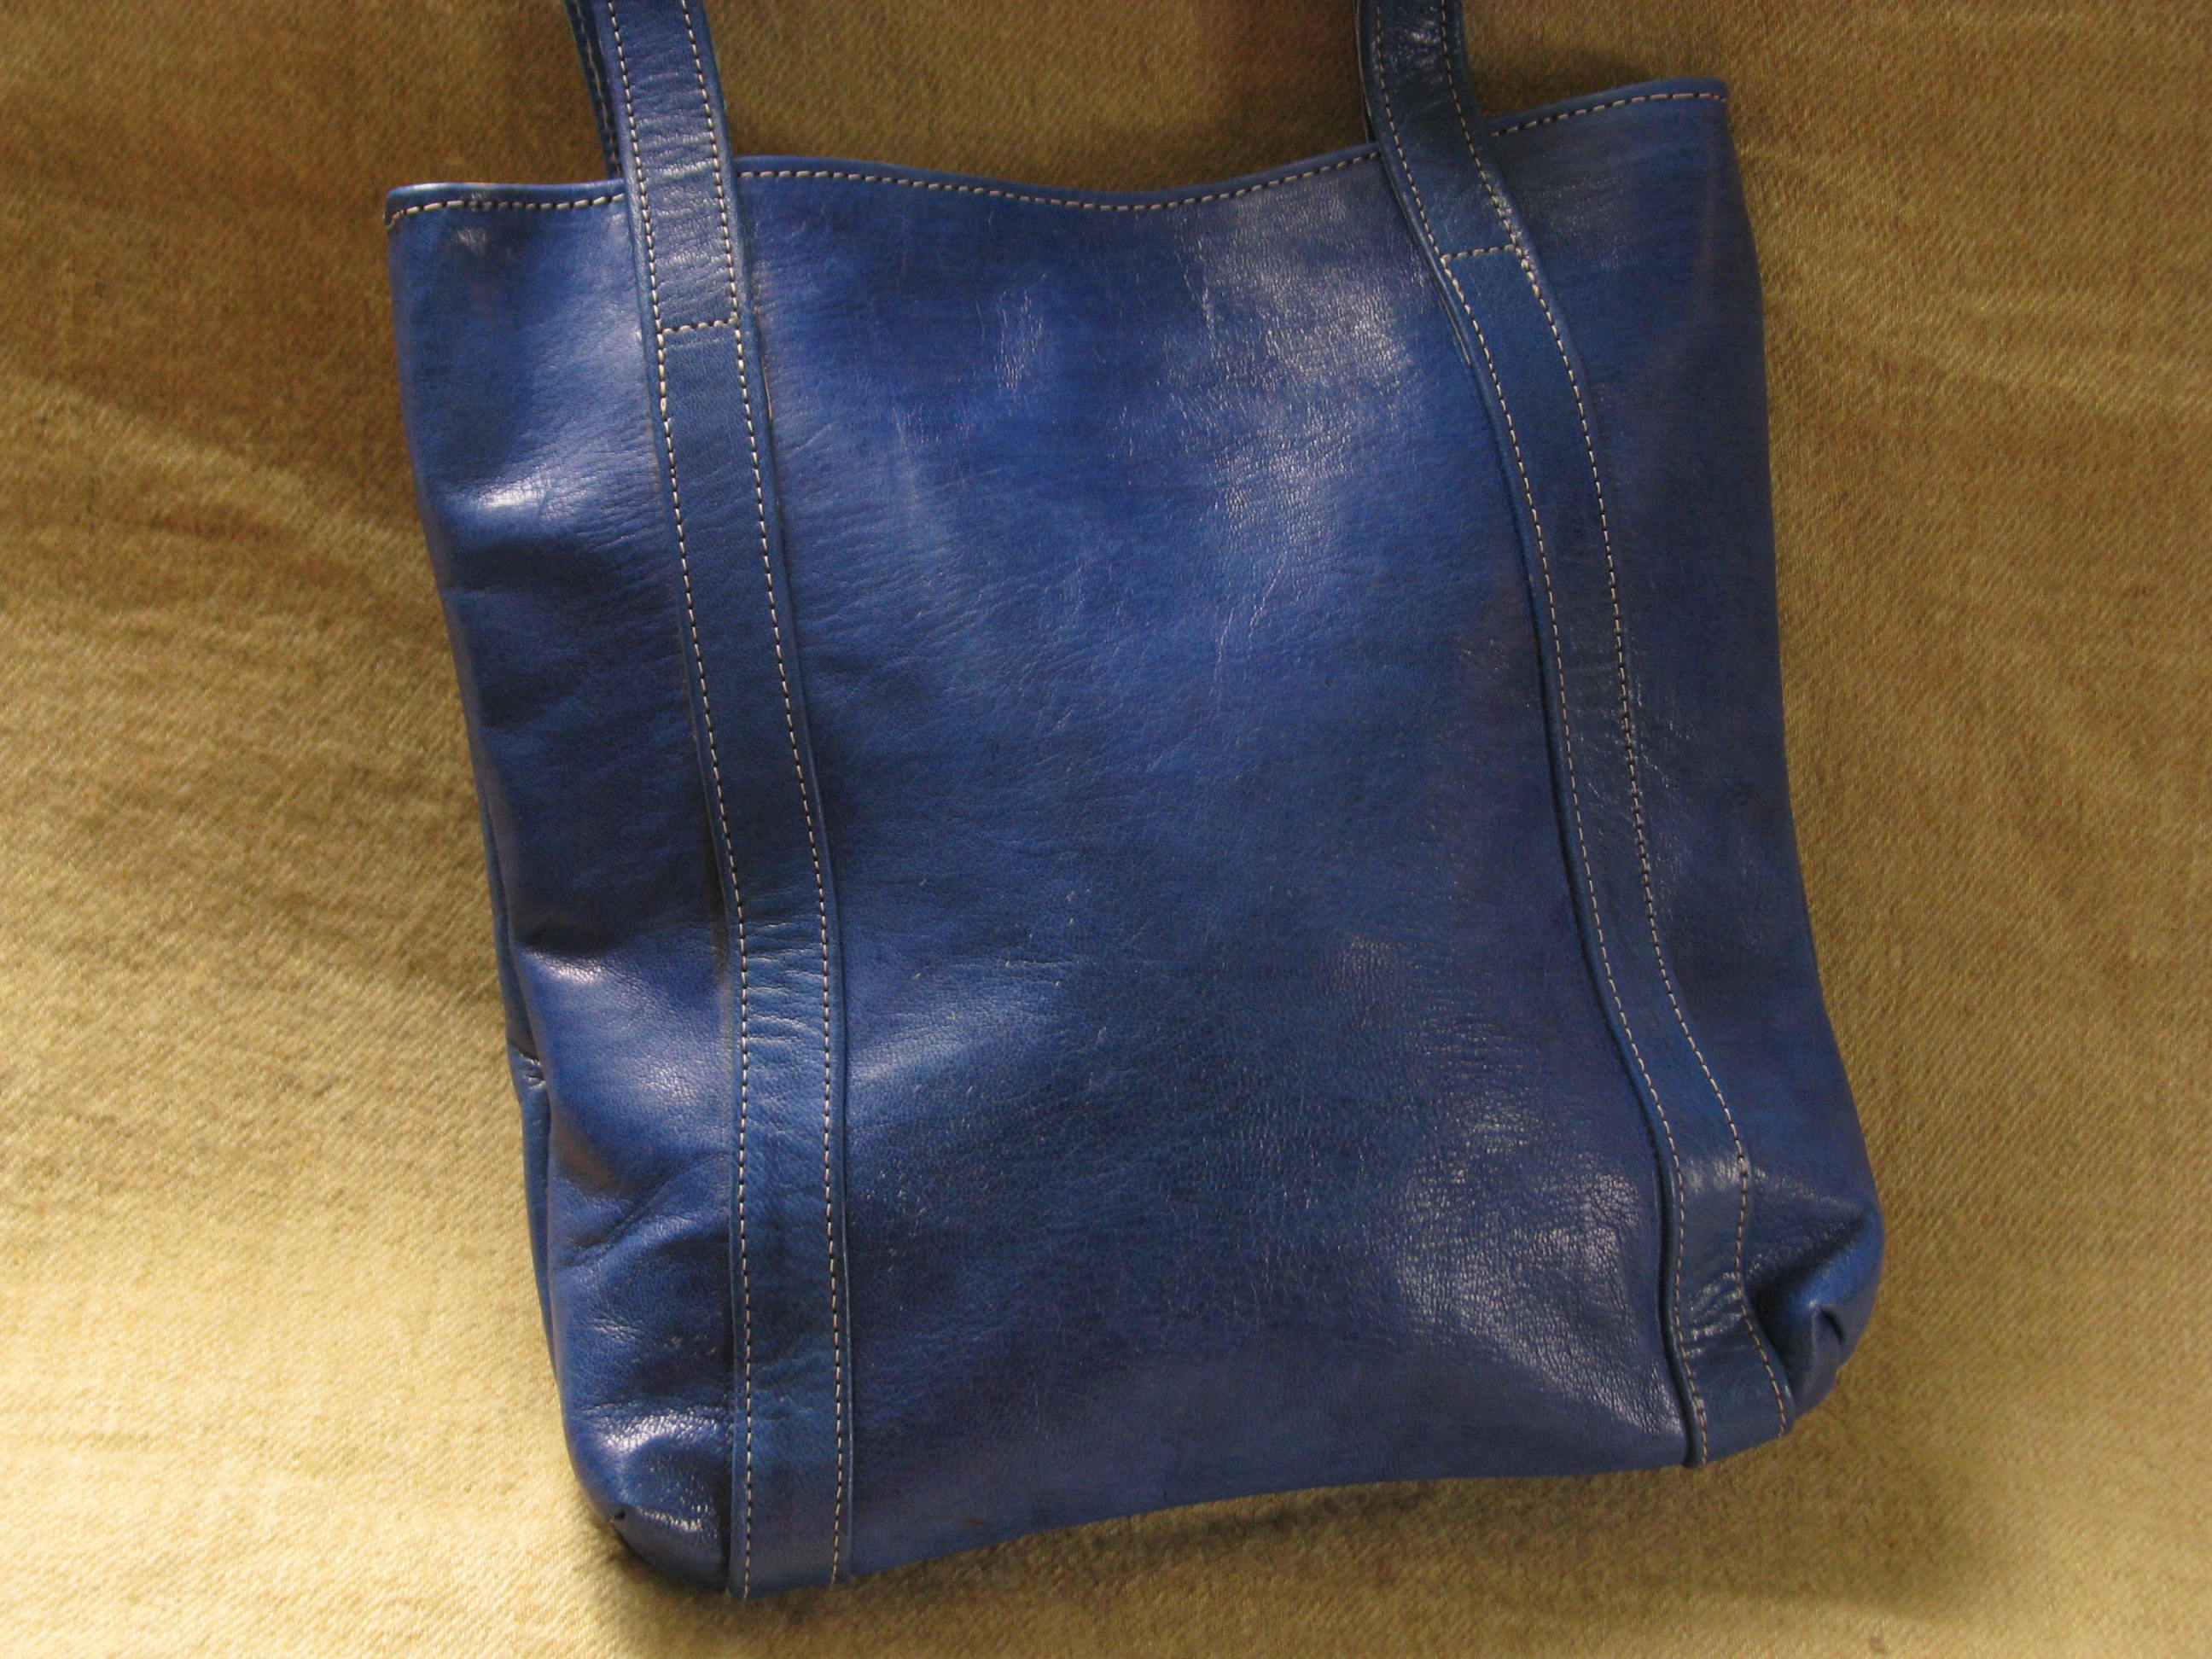 Gundara - genuine leather - handbag - blue - fair trade - Burkina Faso